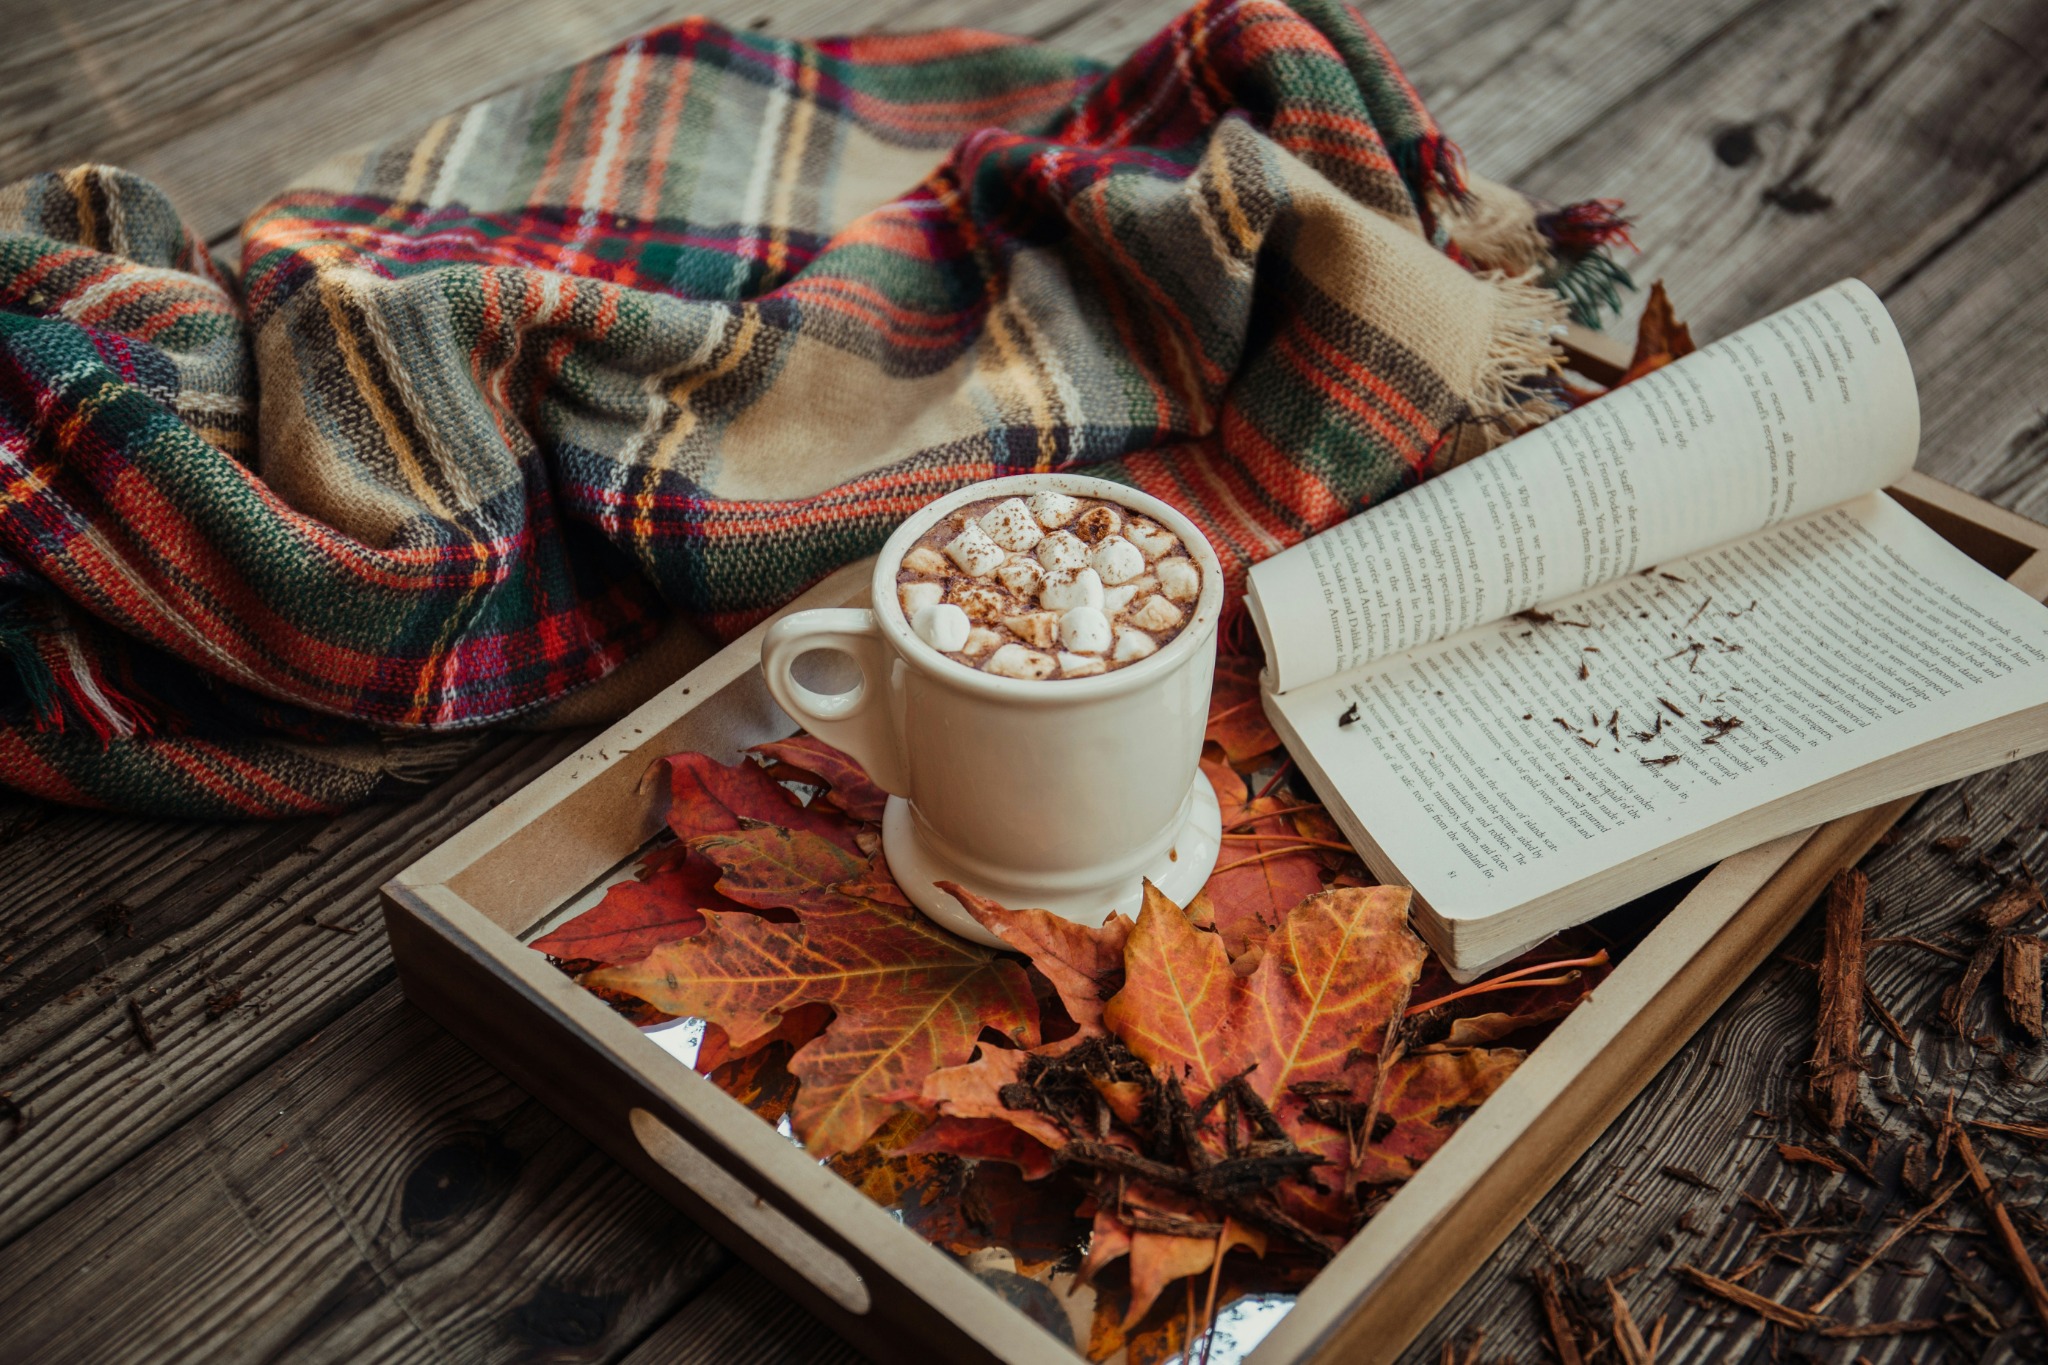 Cozy autumn reading